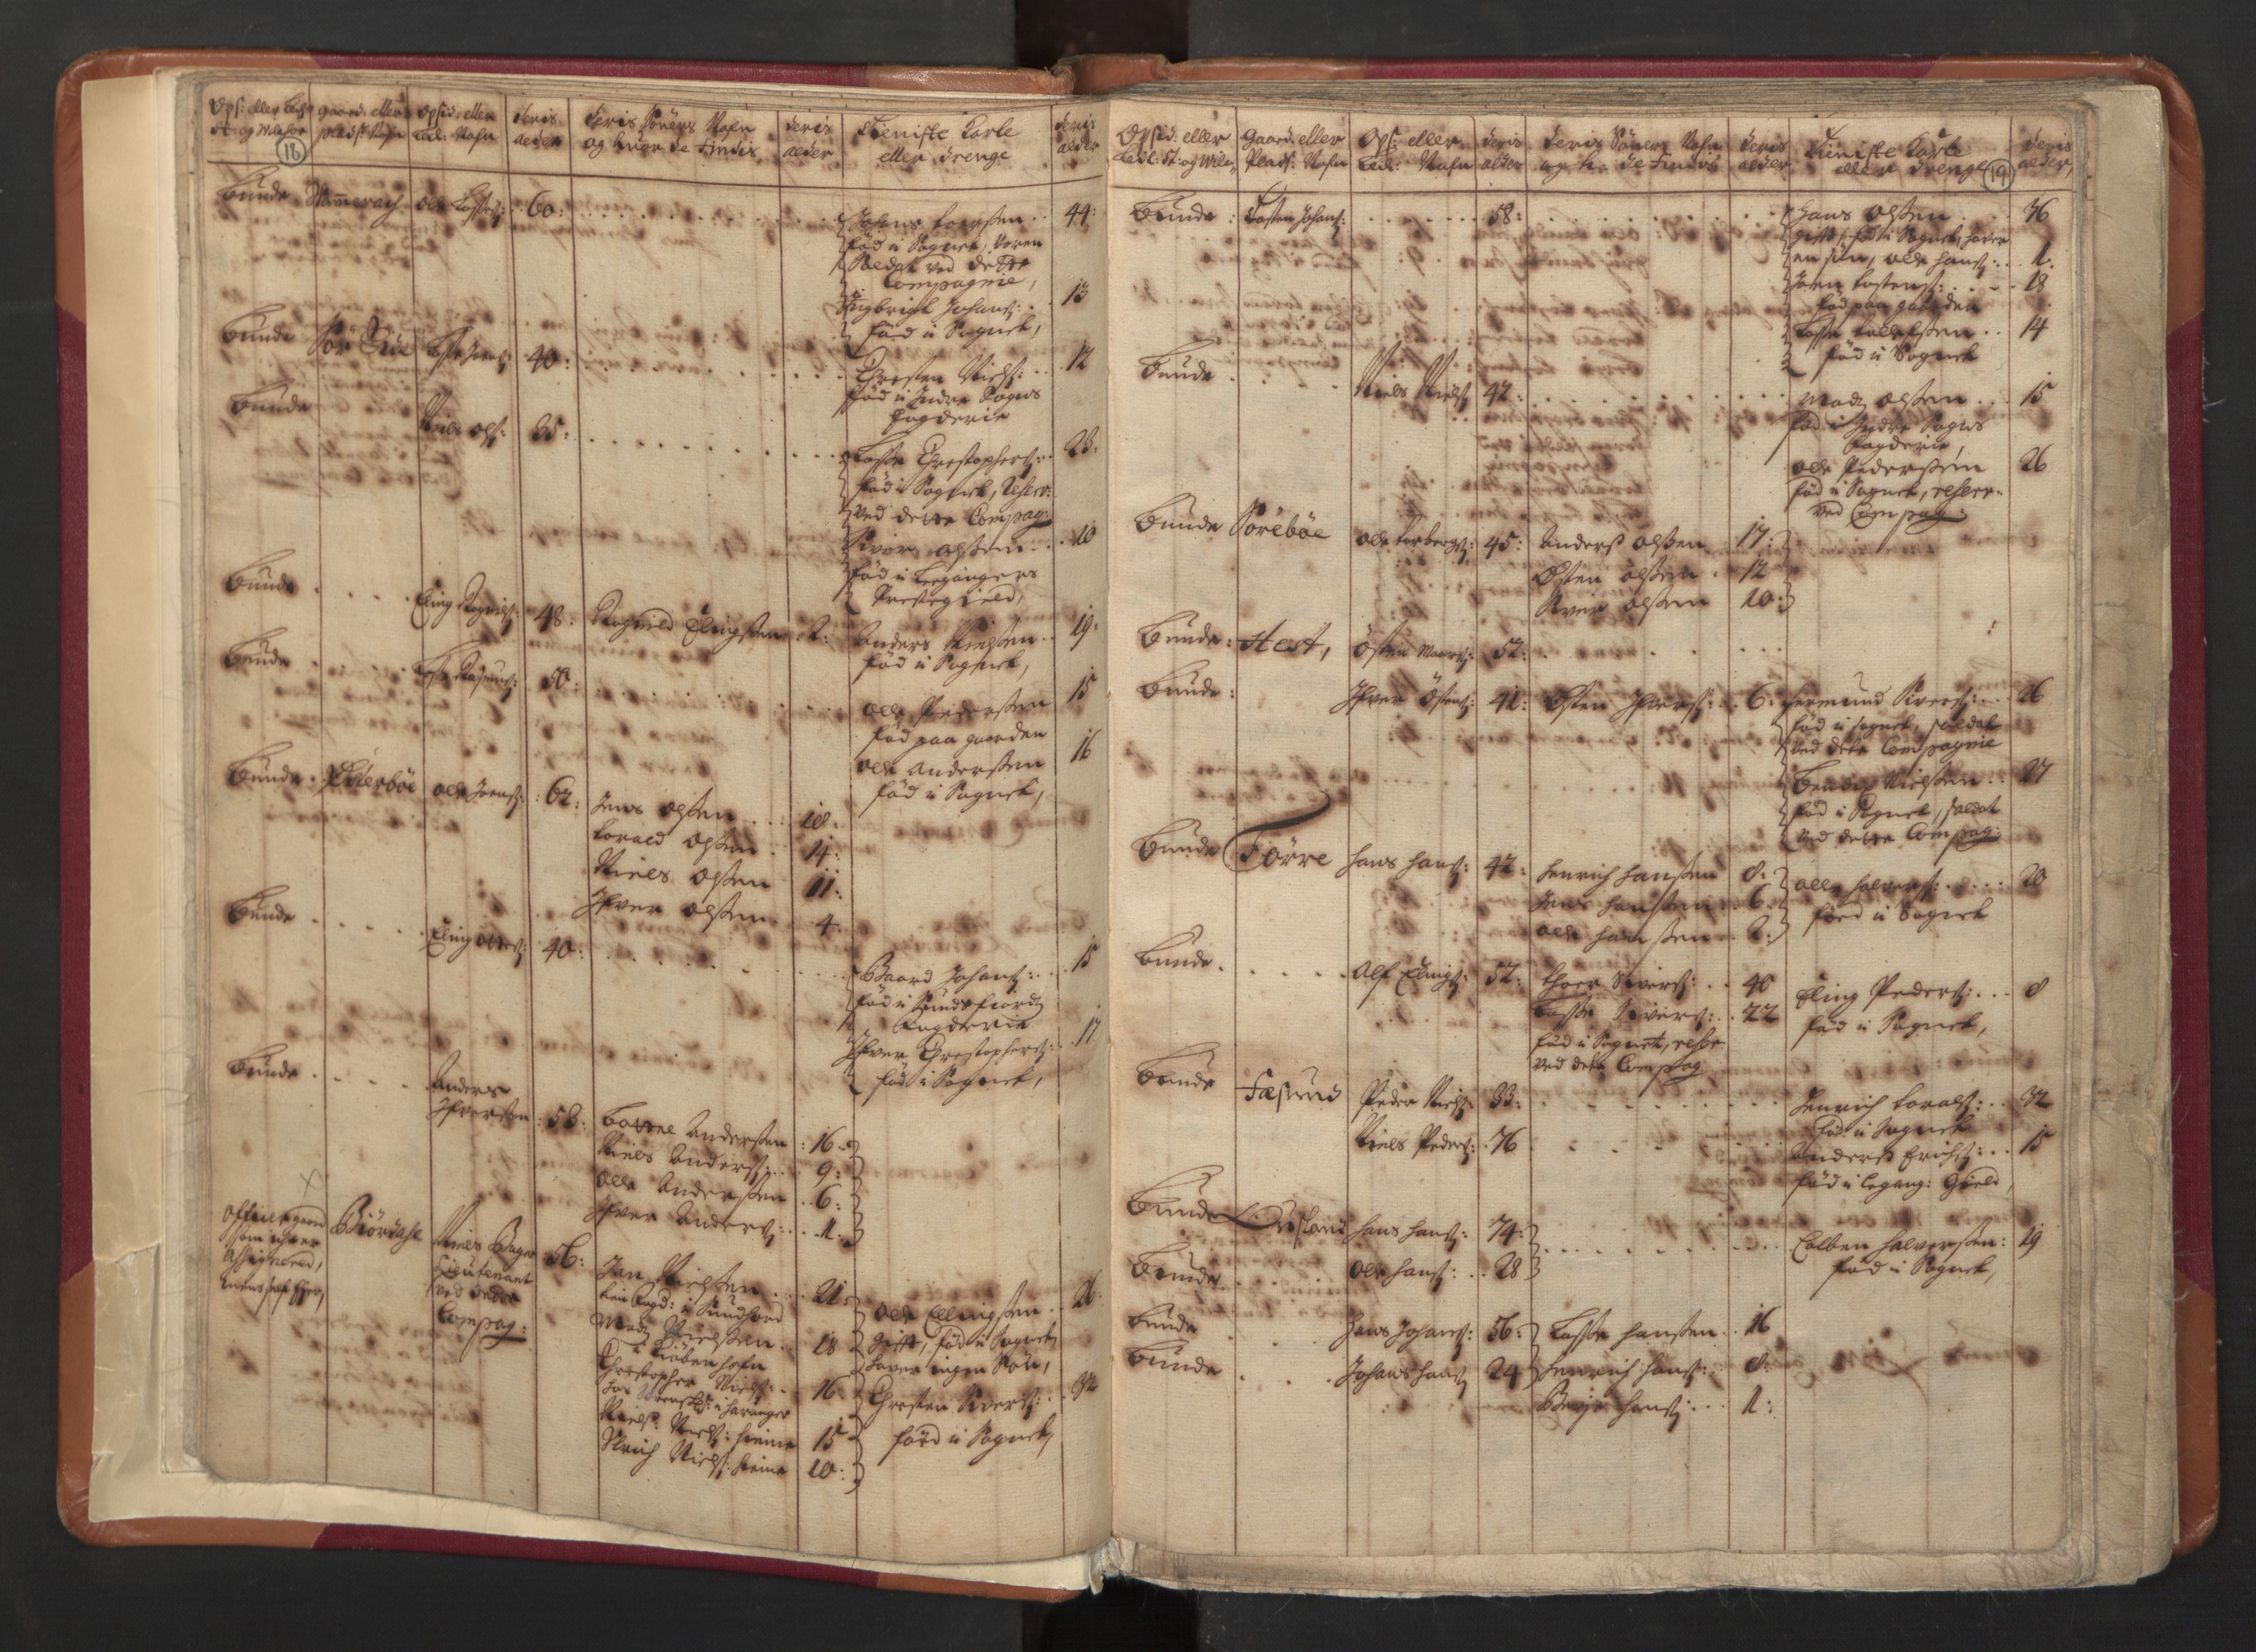 RA, Manntallet 1701, nr. 8: Ytre Sogn fogderi og Indre Sogn fogderi, 1701, s. 18-19